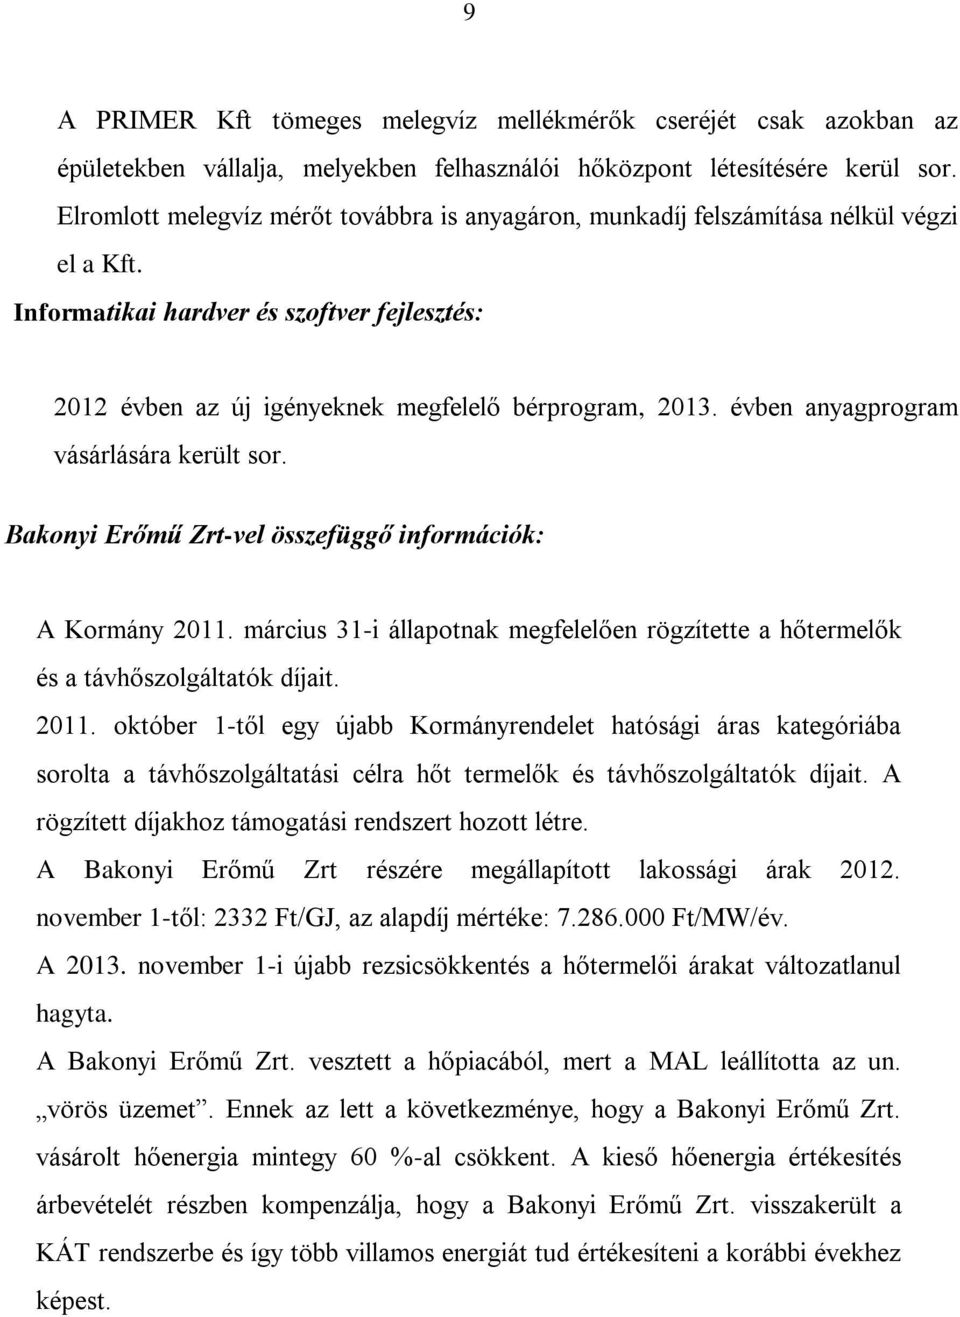 évben anyagprogram vásárlására került sor. Bakonyi Erőmű Zrt-vel összefüggő információk: A Kormány 2011. március 31-i állapotnak megfelelően rögzítette a hőtermelők és a távhőszolgáltatók díjait.